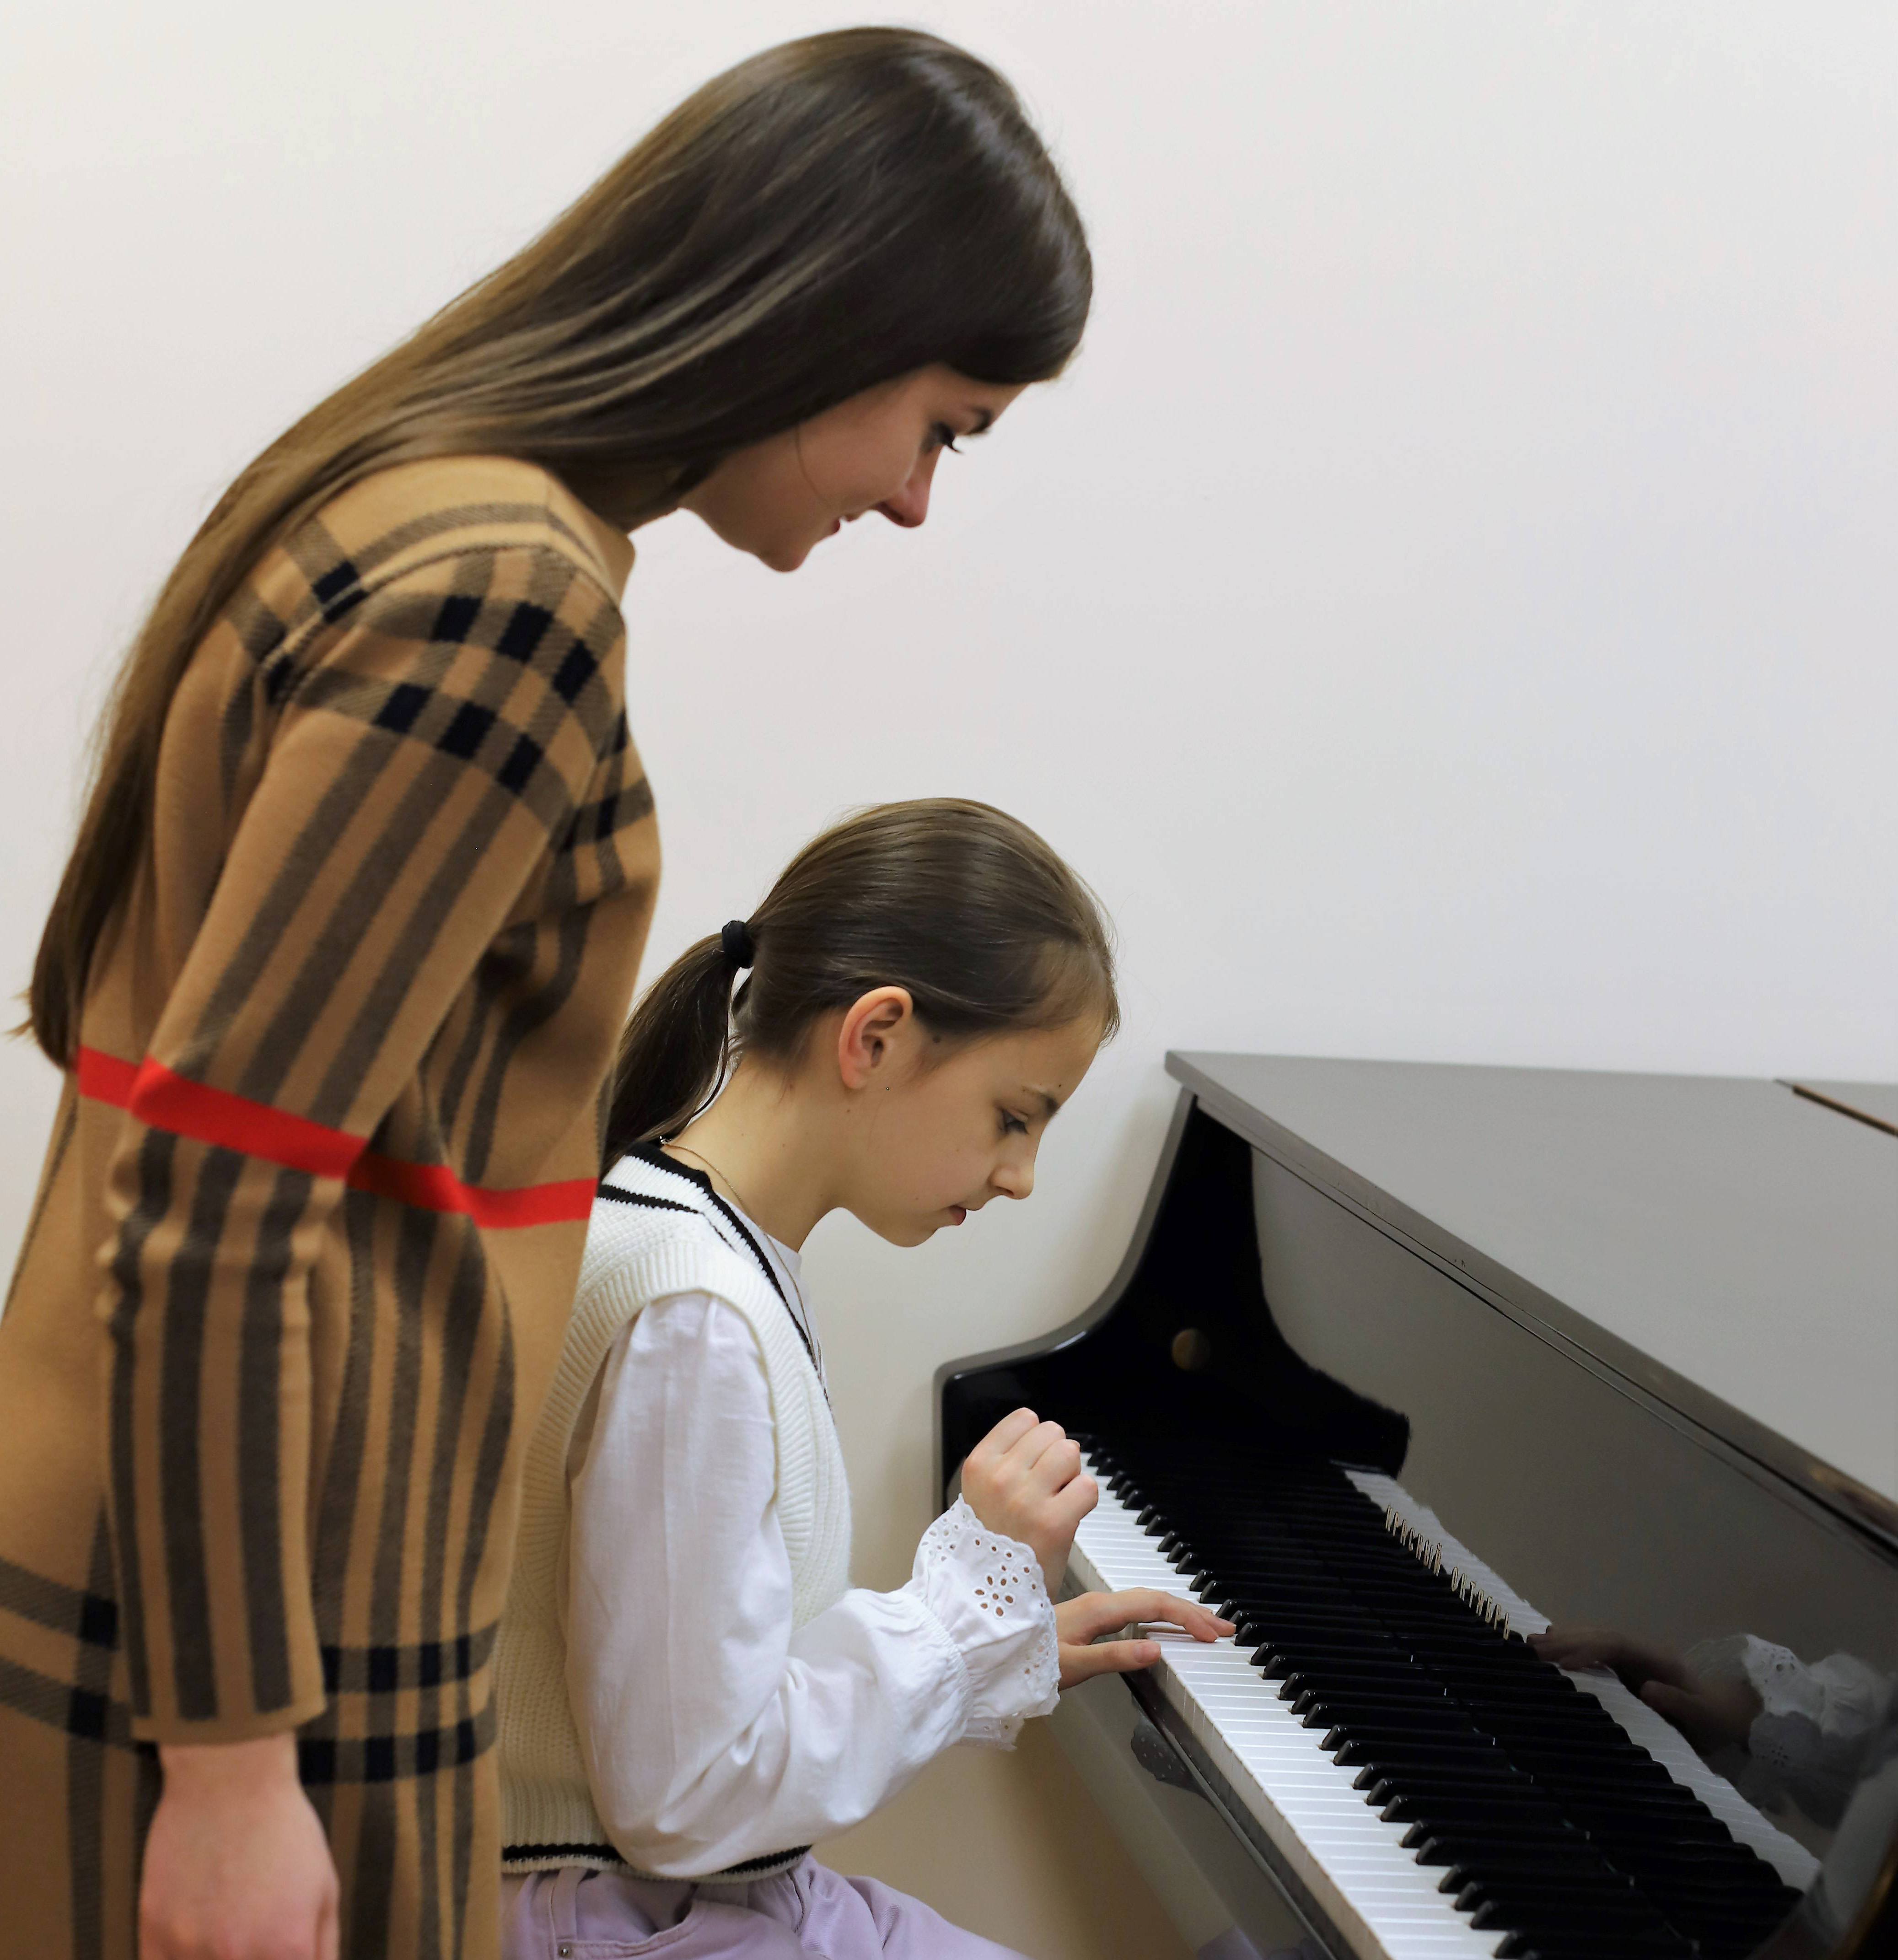 Marija Lysenko ir Alytaus muzikos mokyklos direktorė Gabrielė Dambauskaitė. Zitos STANKEVIČIENĖS nuotr.